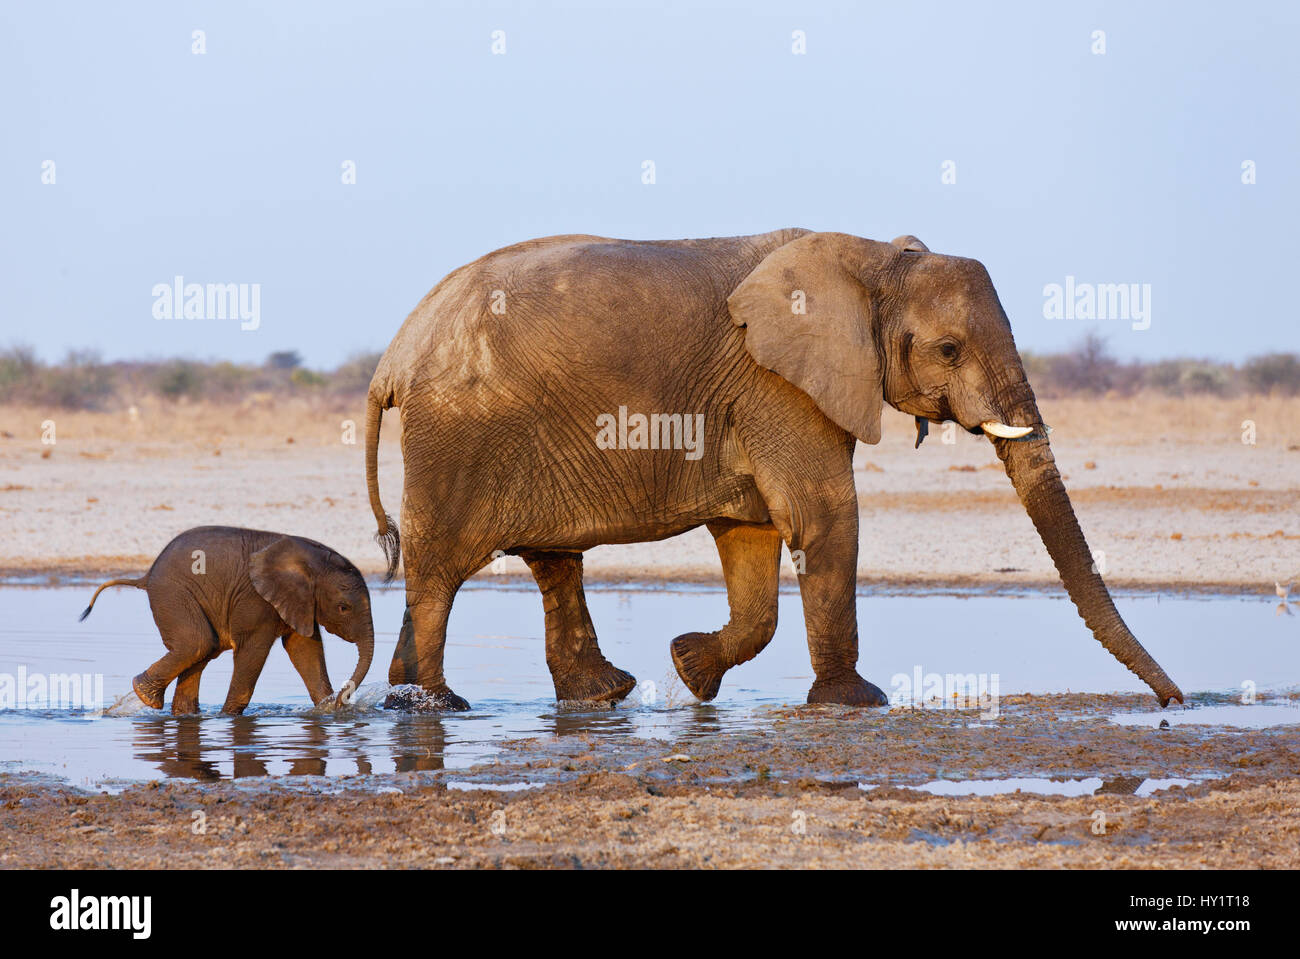 L'éléphant africain (Loxodonta africana) la mère et l'enfant marche à travers l'eau, Etosha National Park, Namibie, août. Les espèces en voie de disparition. Banque D'Images